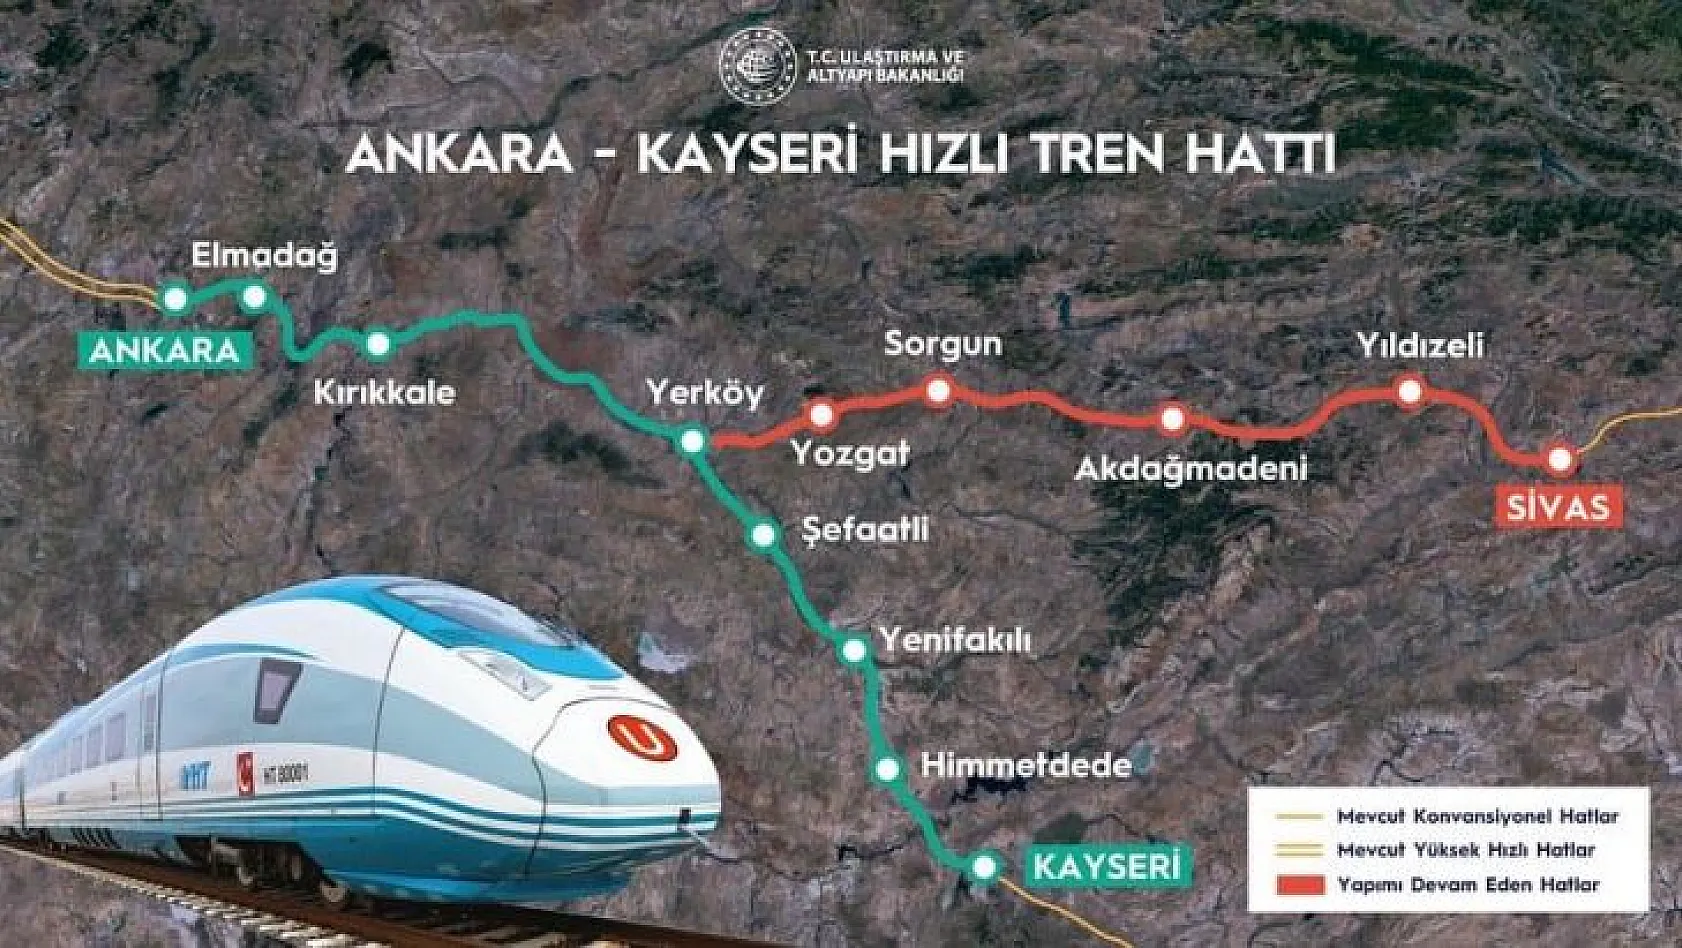 Bakan'dan, Kayseri hızlı tren açıklaması: Yılda 11 milyon yolcu taşıyacağız